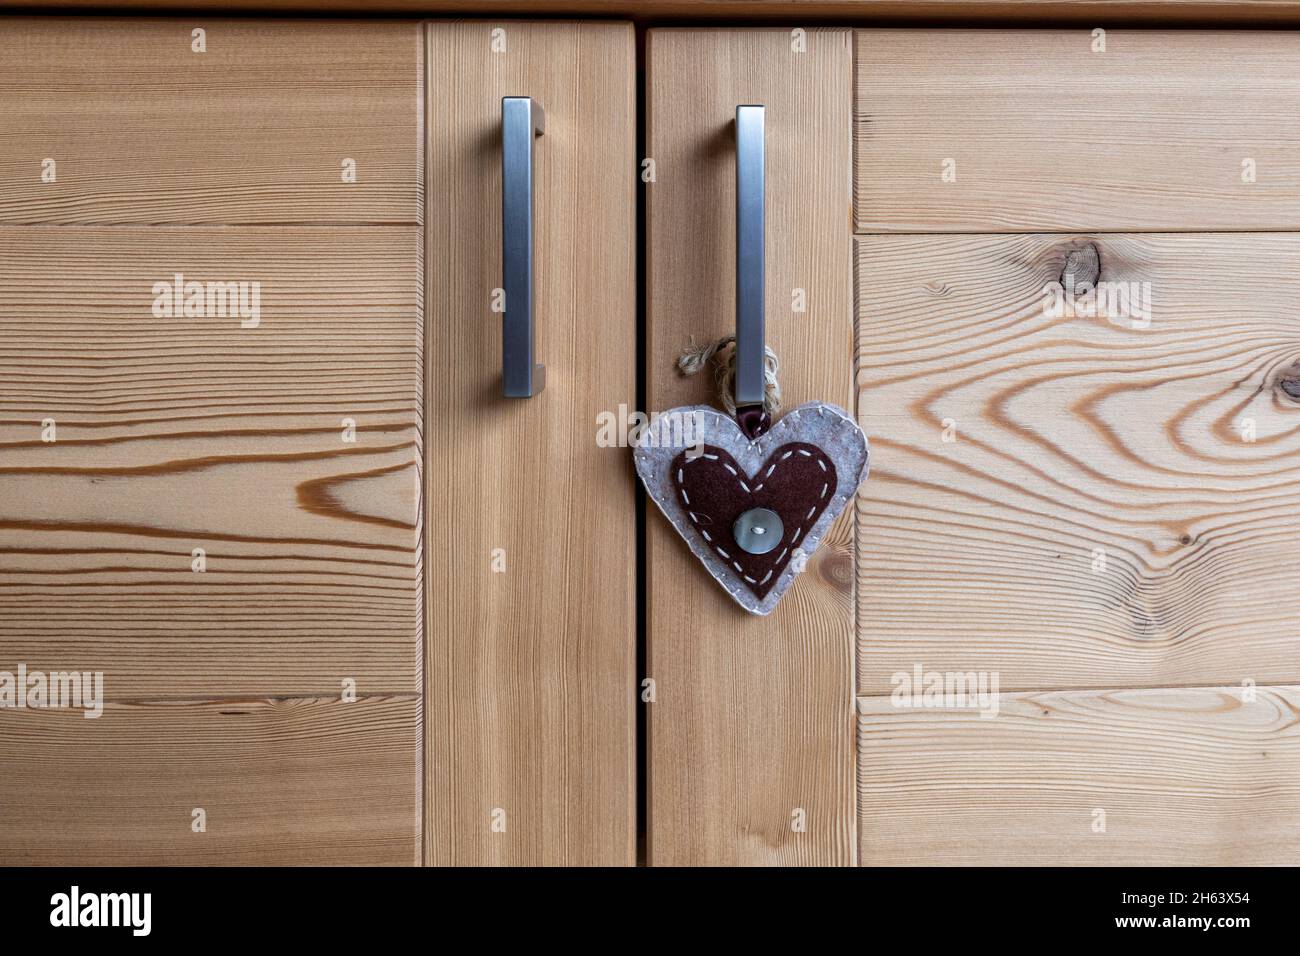 Holzmöbel, Detail der Türen mit einem Objekt in Form eines Herzens Stockfoto